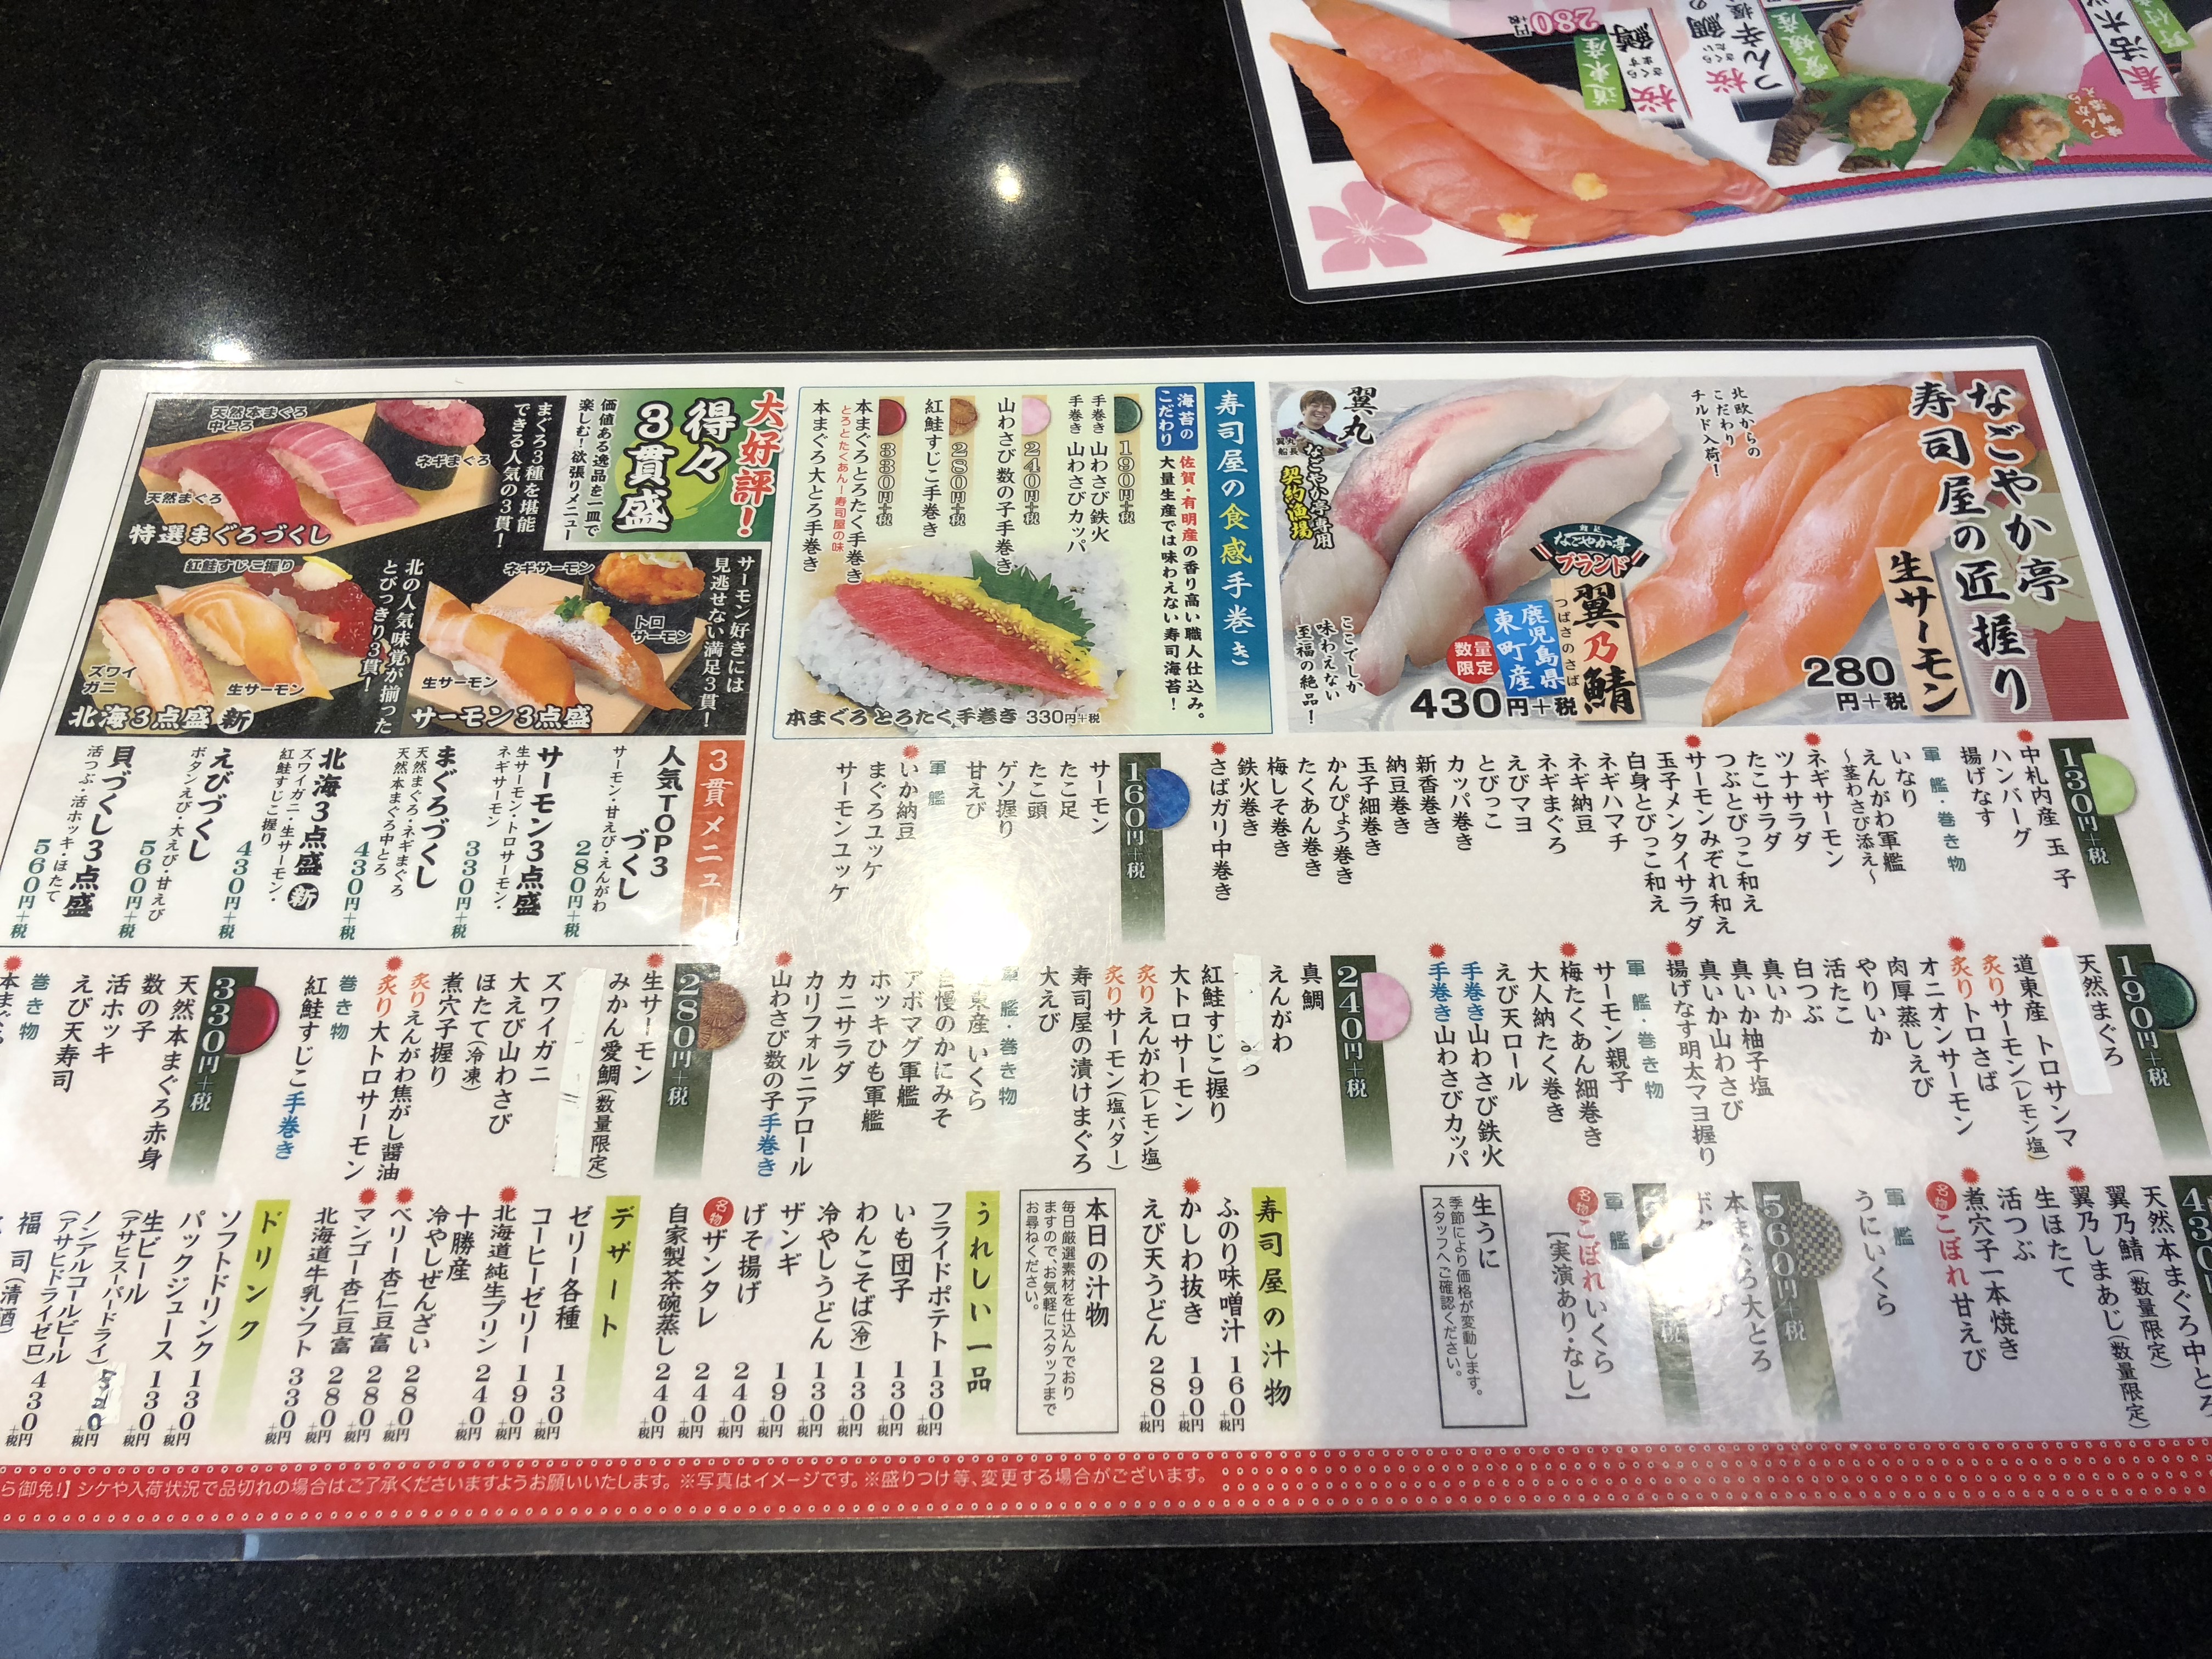 北海道で一番おすすめの回転寿司なごやか亭に行ってきた 道産子コスケの北海道を楽しむブログ